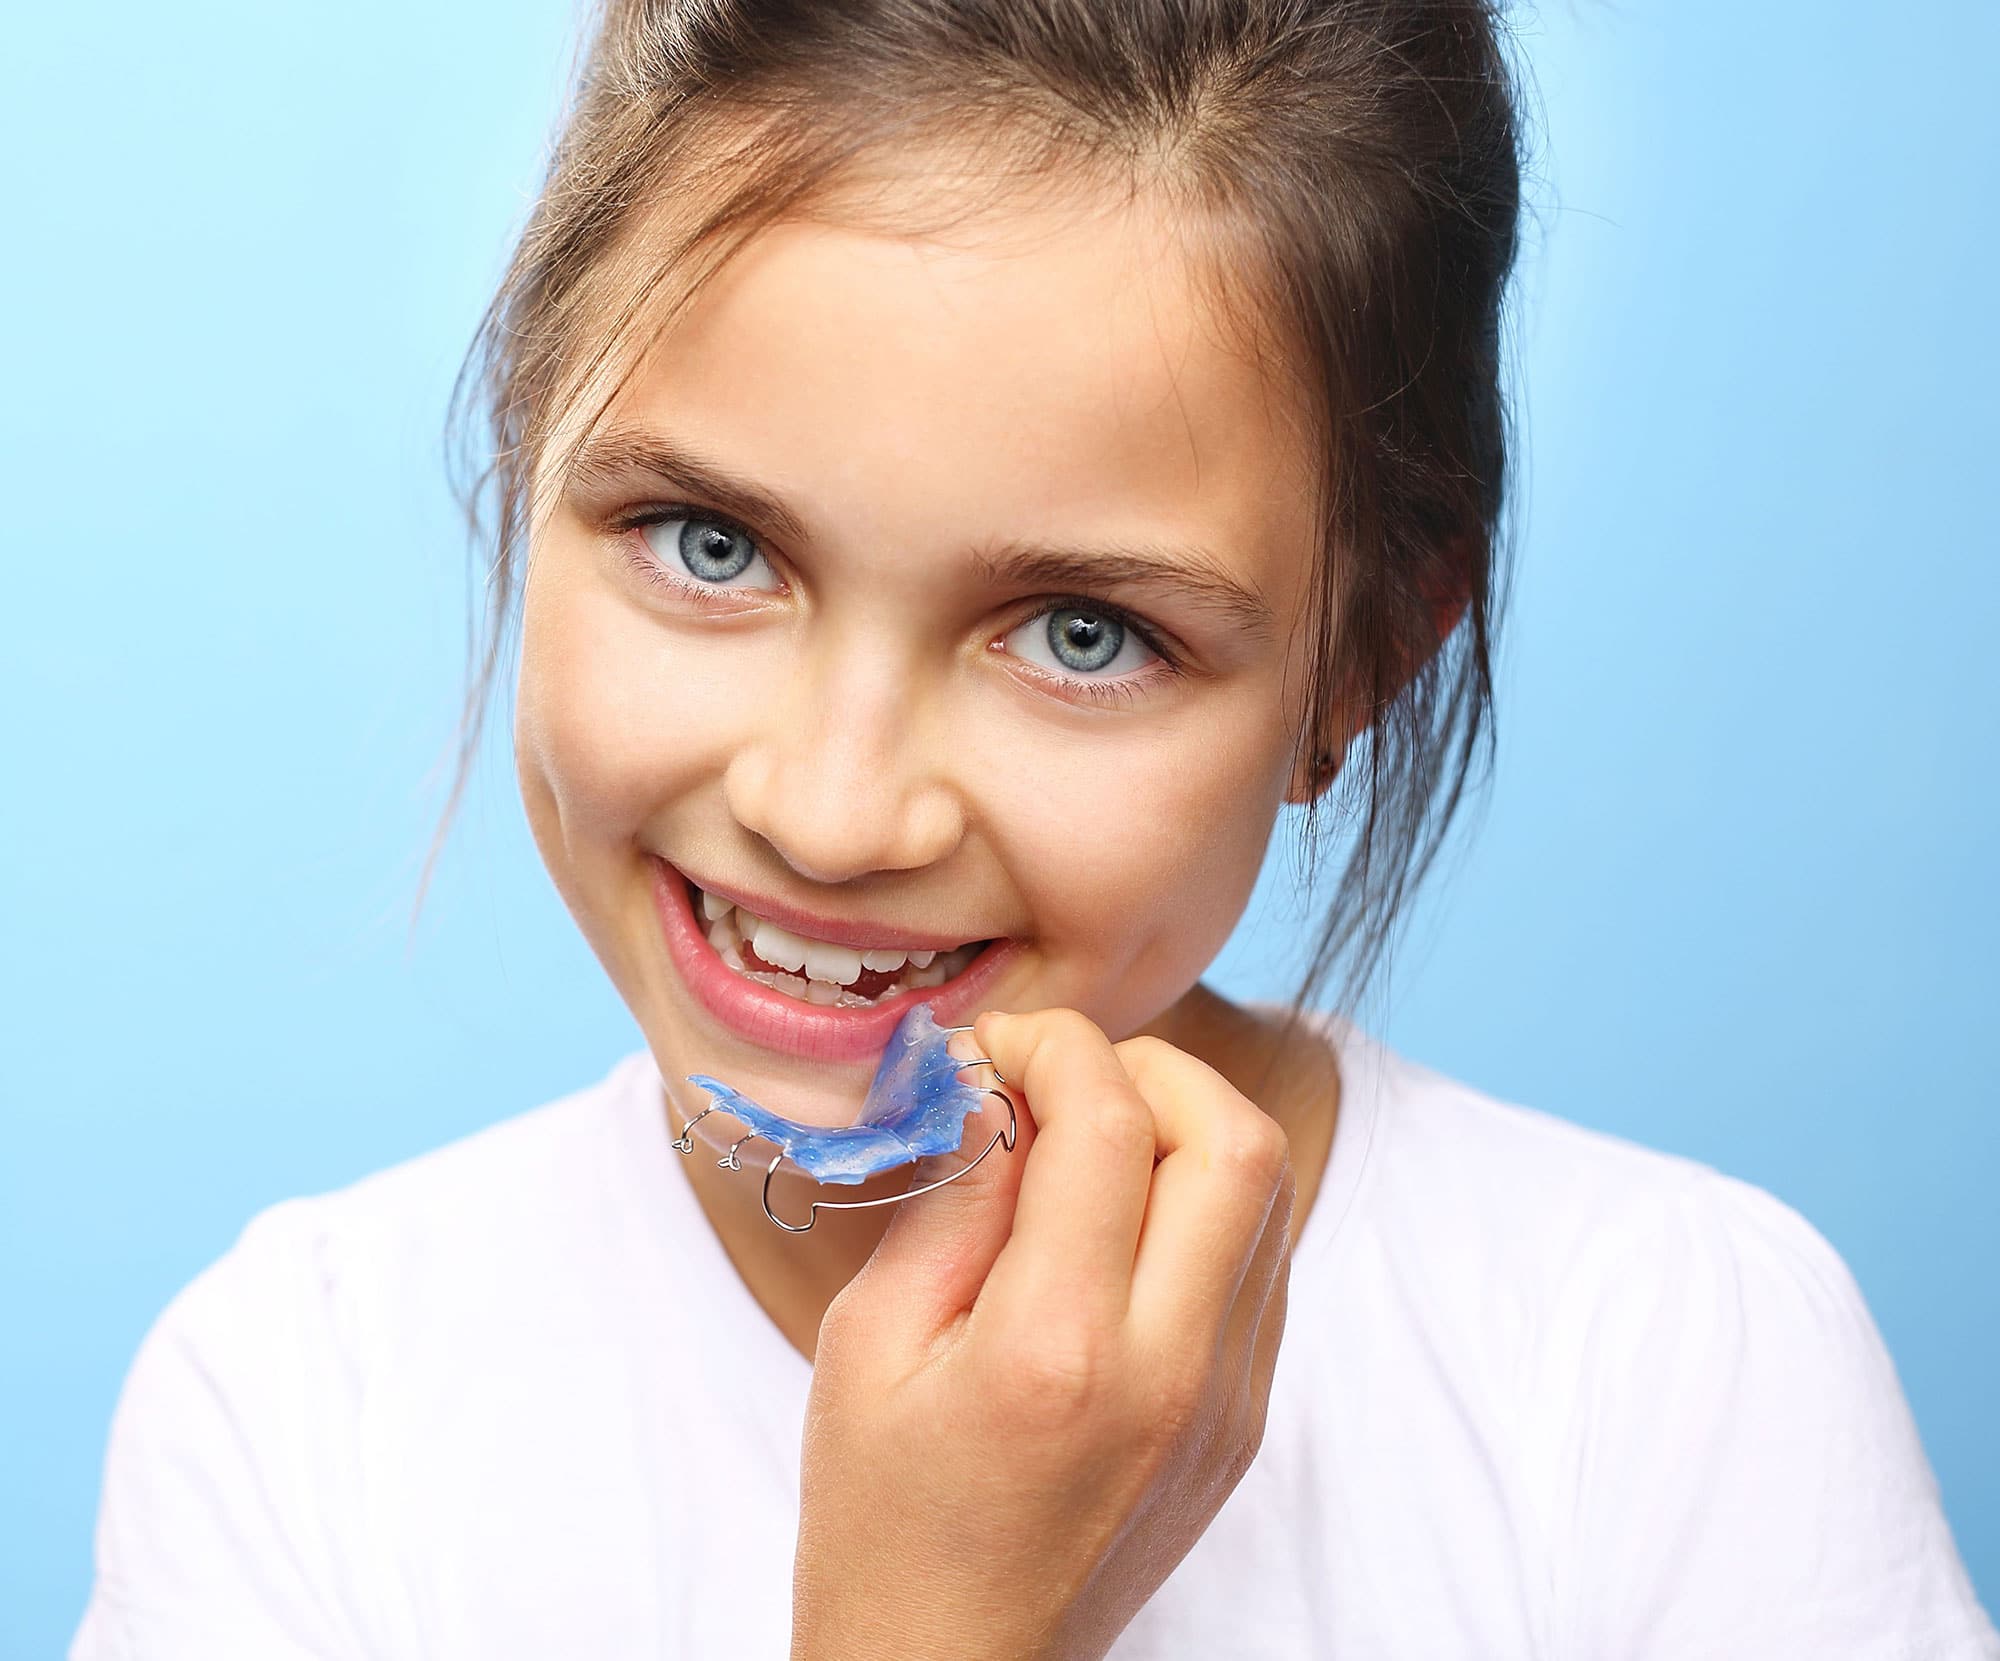 Капы для выравнивания зубов детям в 10 лет фото